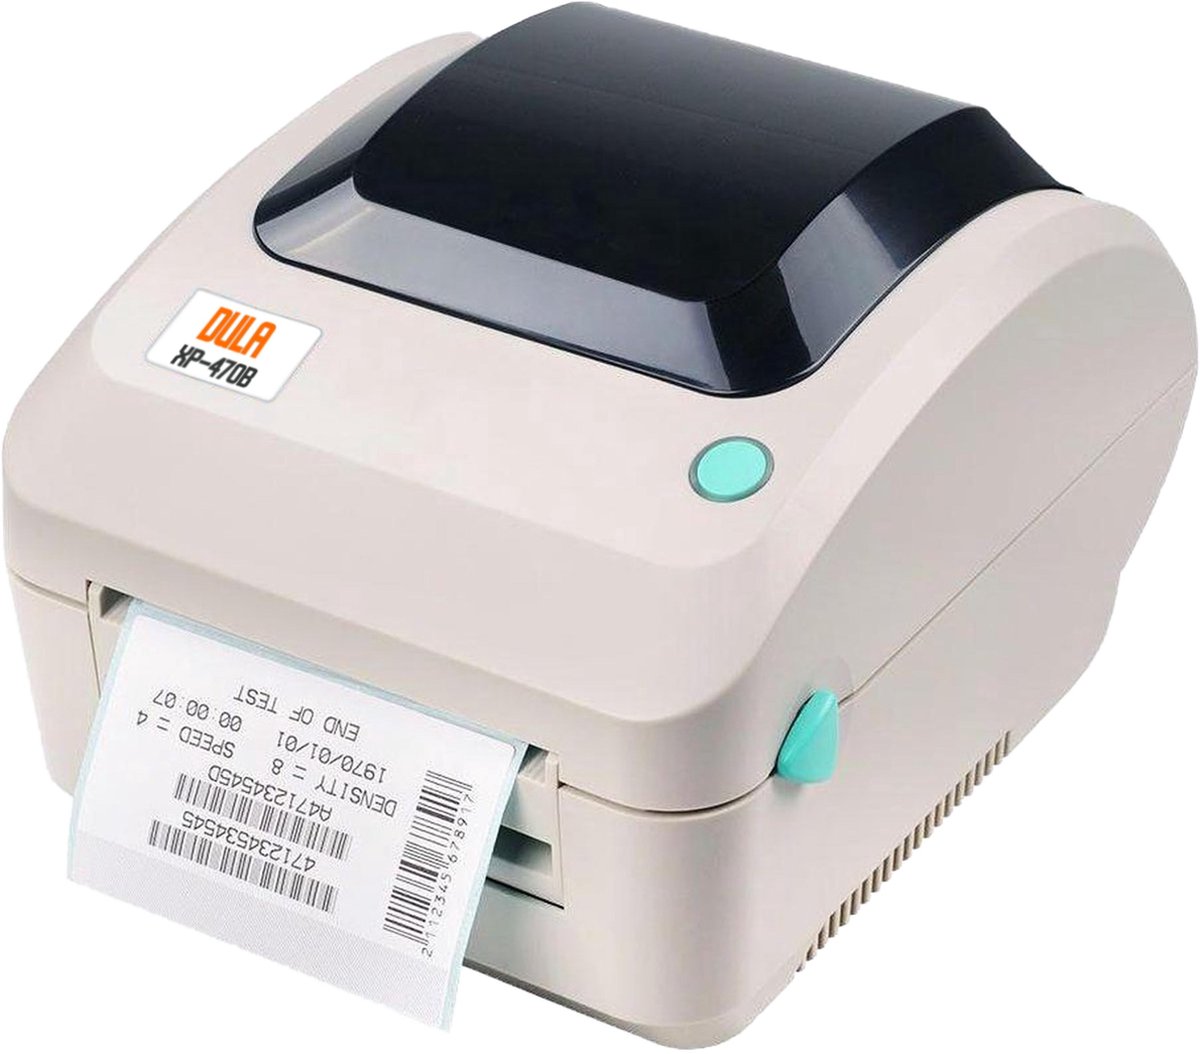 DULA XP-470B - Desktop A6 Labelprinter